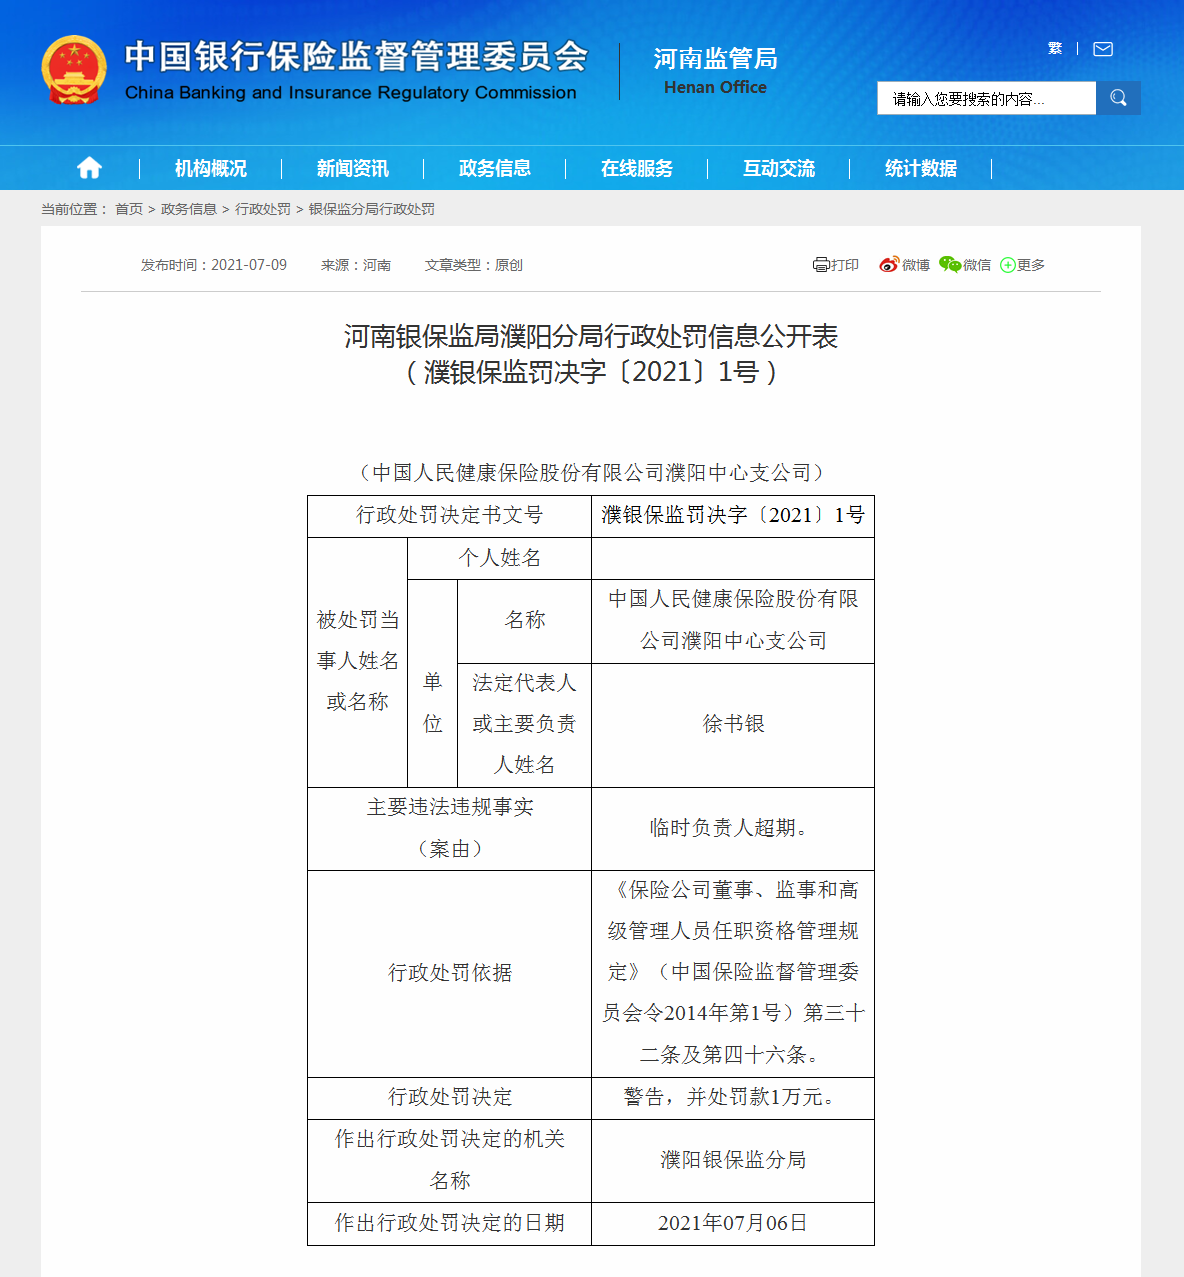 中国人民健康保险股份有限公司濮阳中心支公司因临时负责人超期被警告并罚款1万元